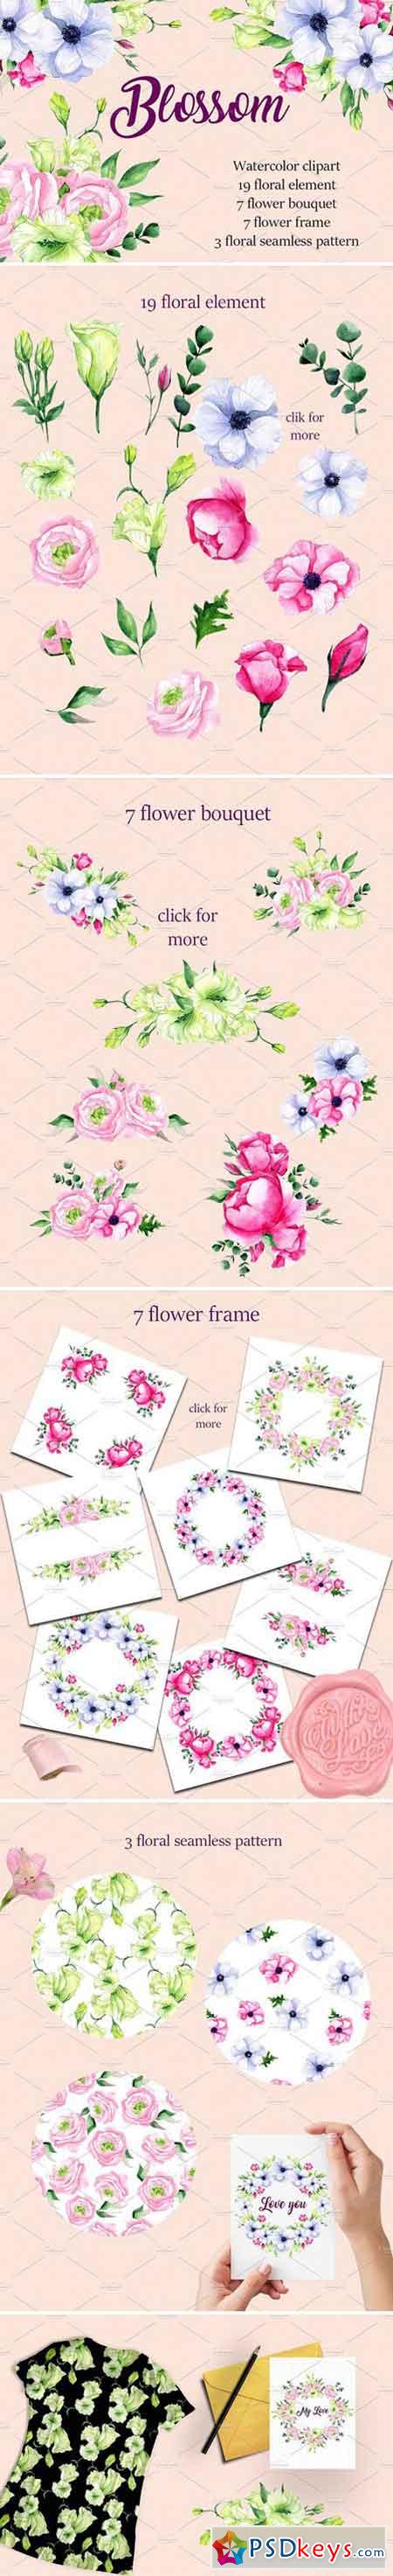 Watercolor clipart Blossom 2486278